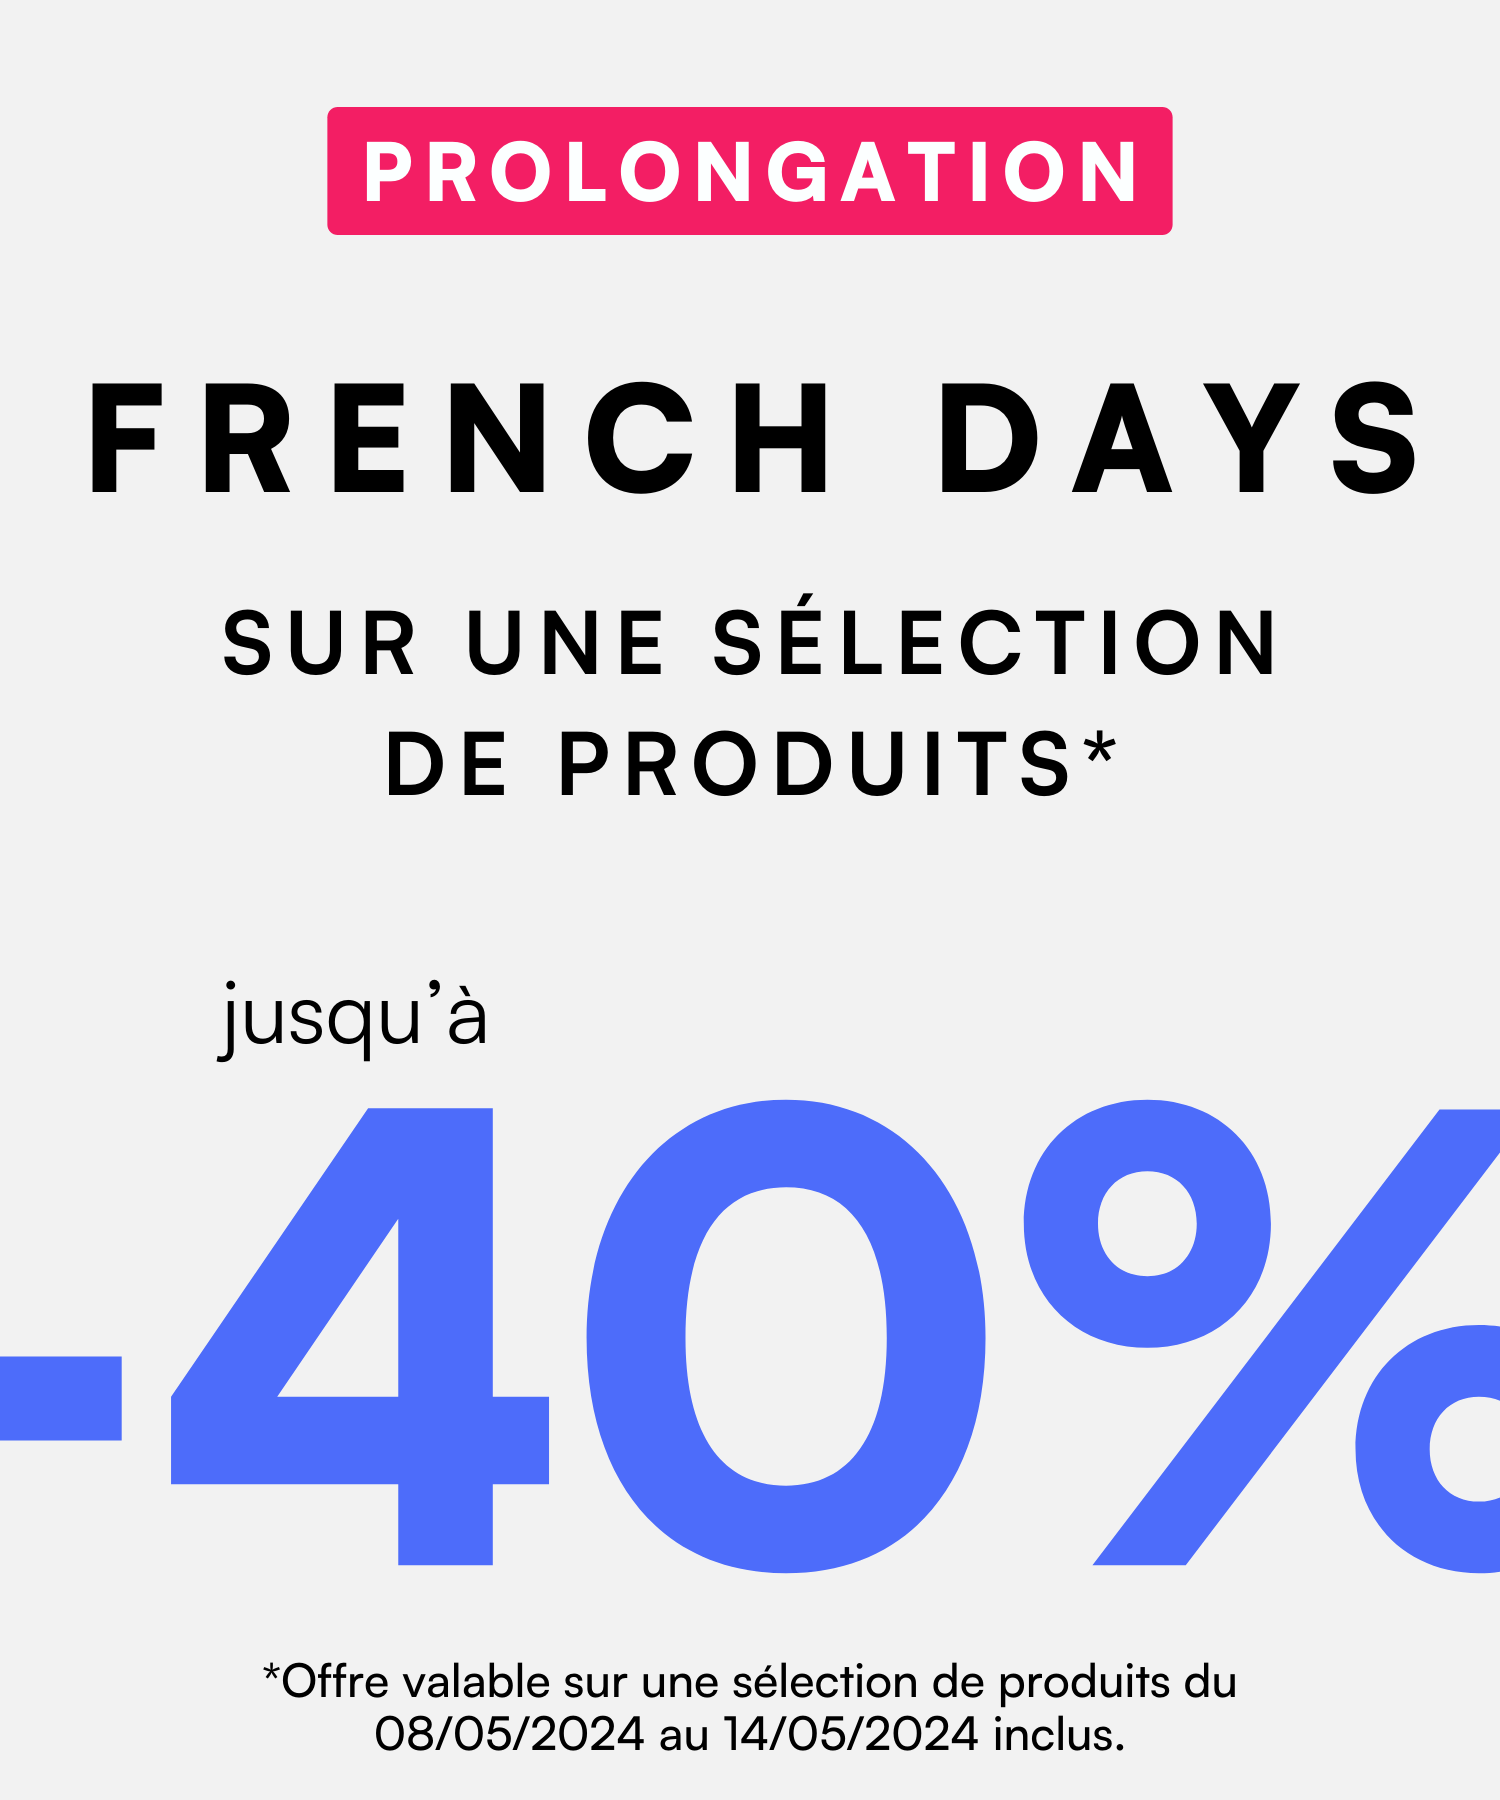 Prolongation French Days sweeek